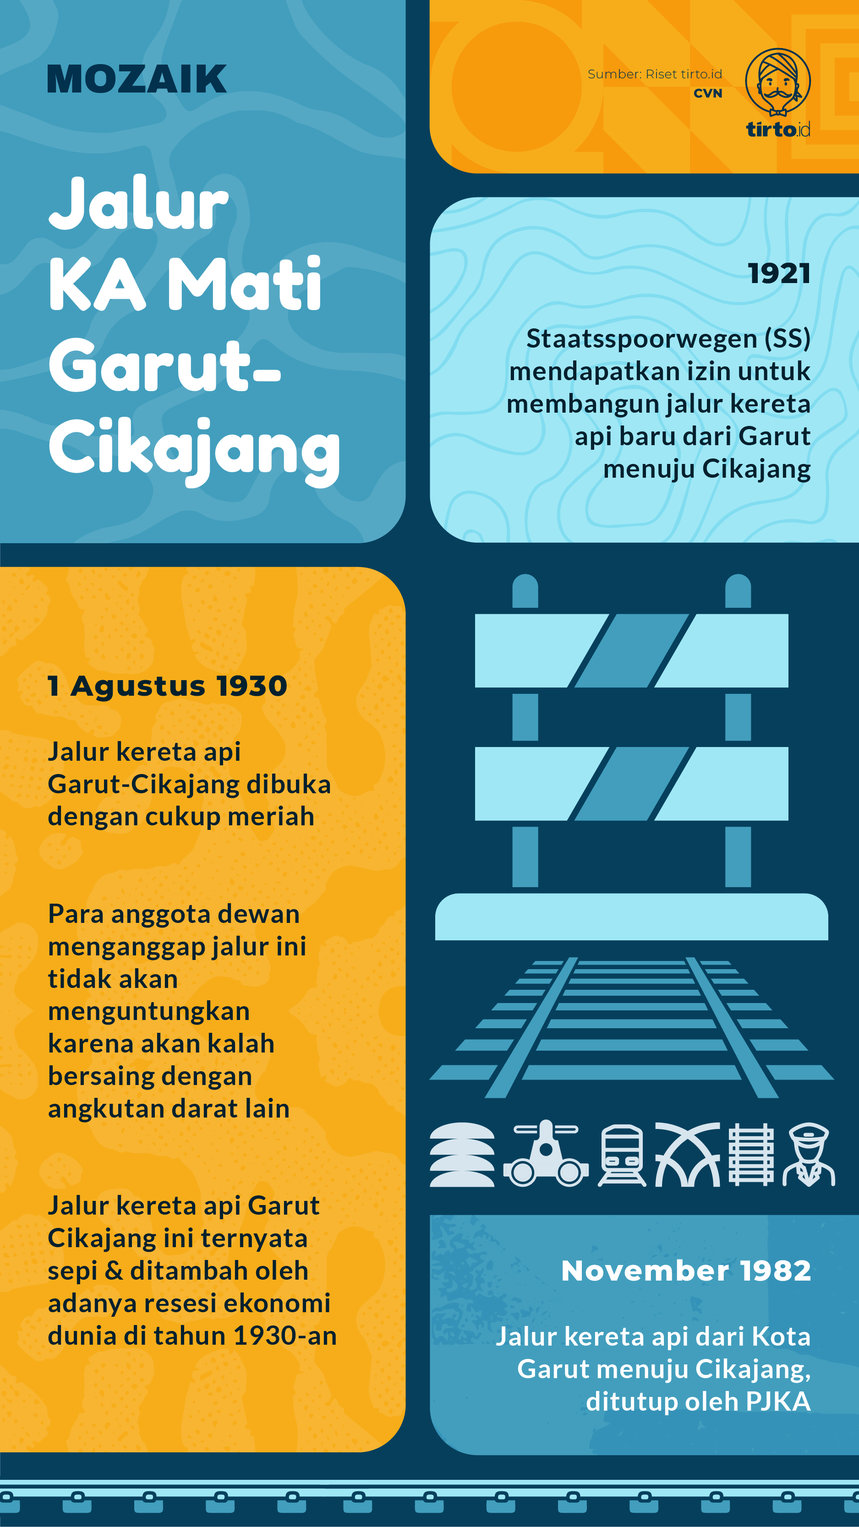 Infografik Mozaik Jalur KA mati Garut-Cikajang